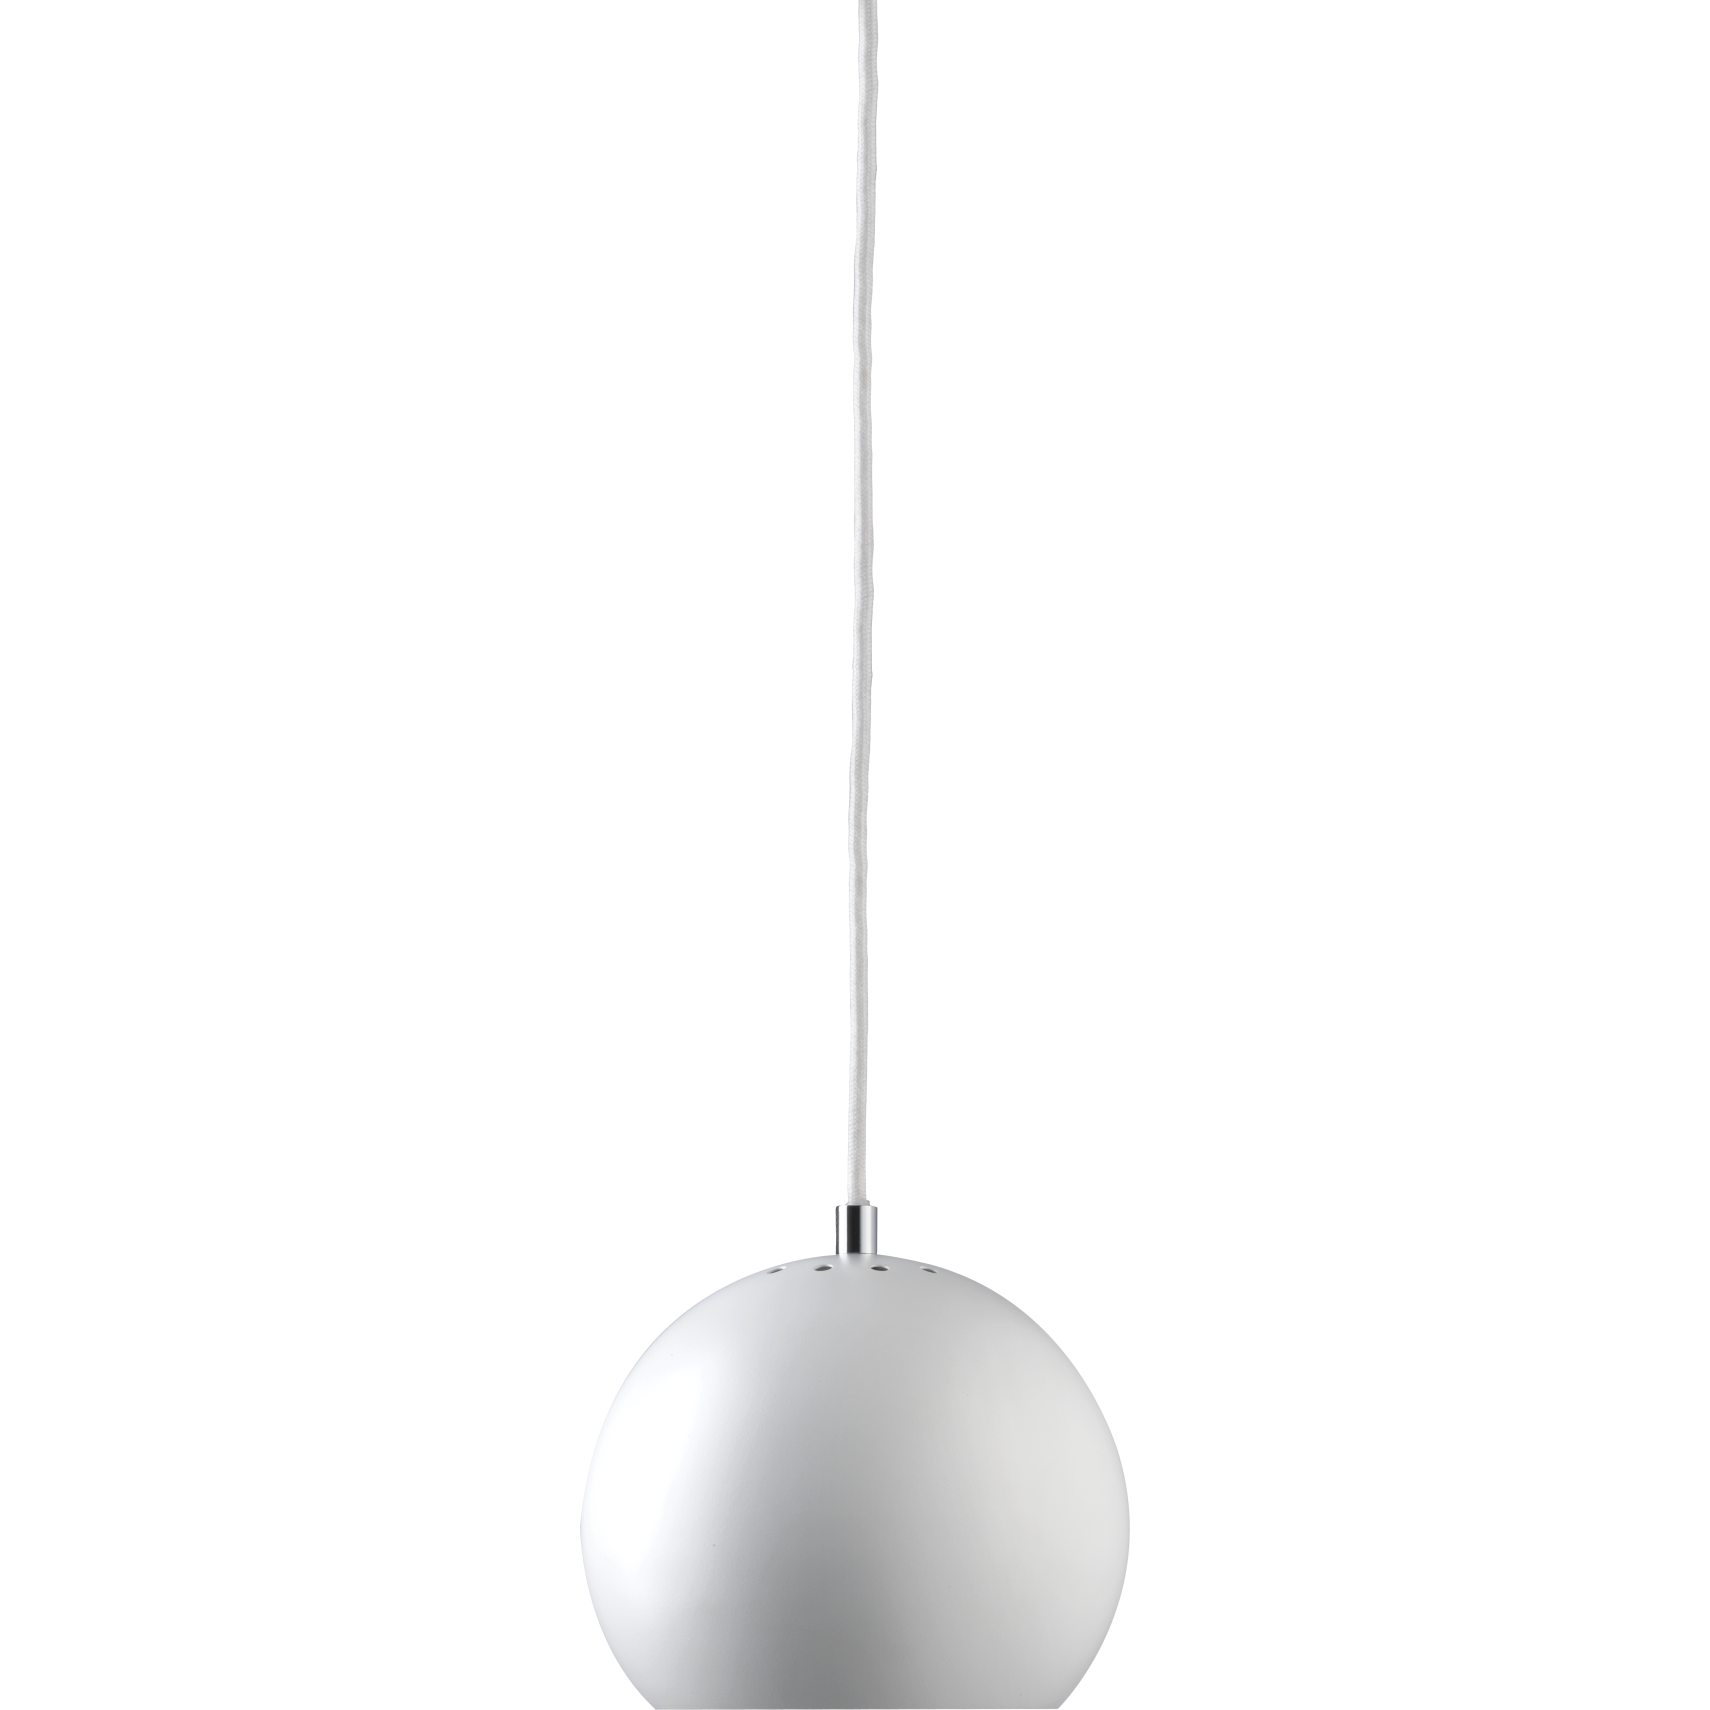 Ball pendellampa (liten) 18 cm - Matt vit metallskärm och vit textilsladd